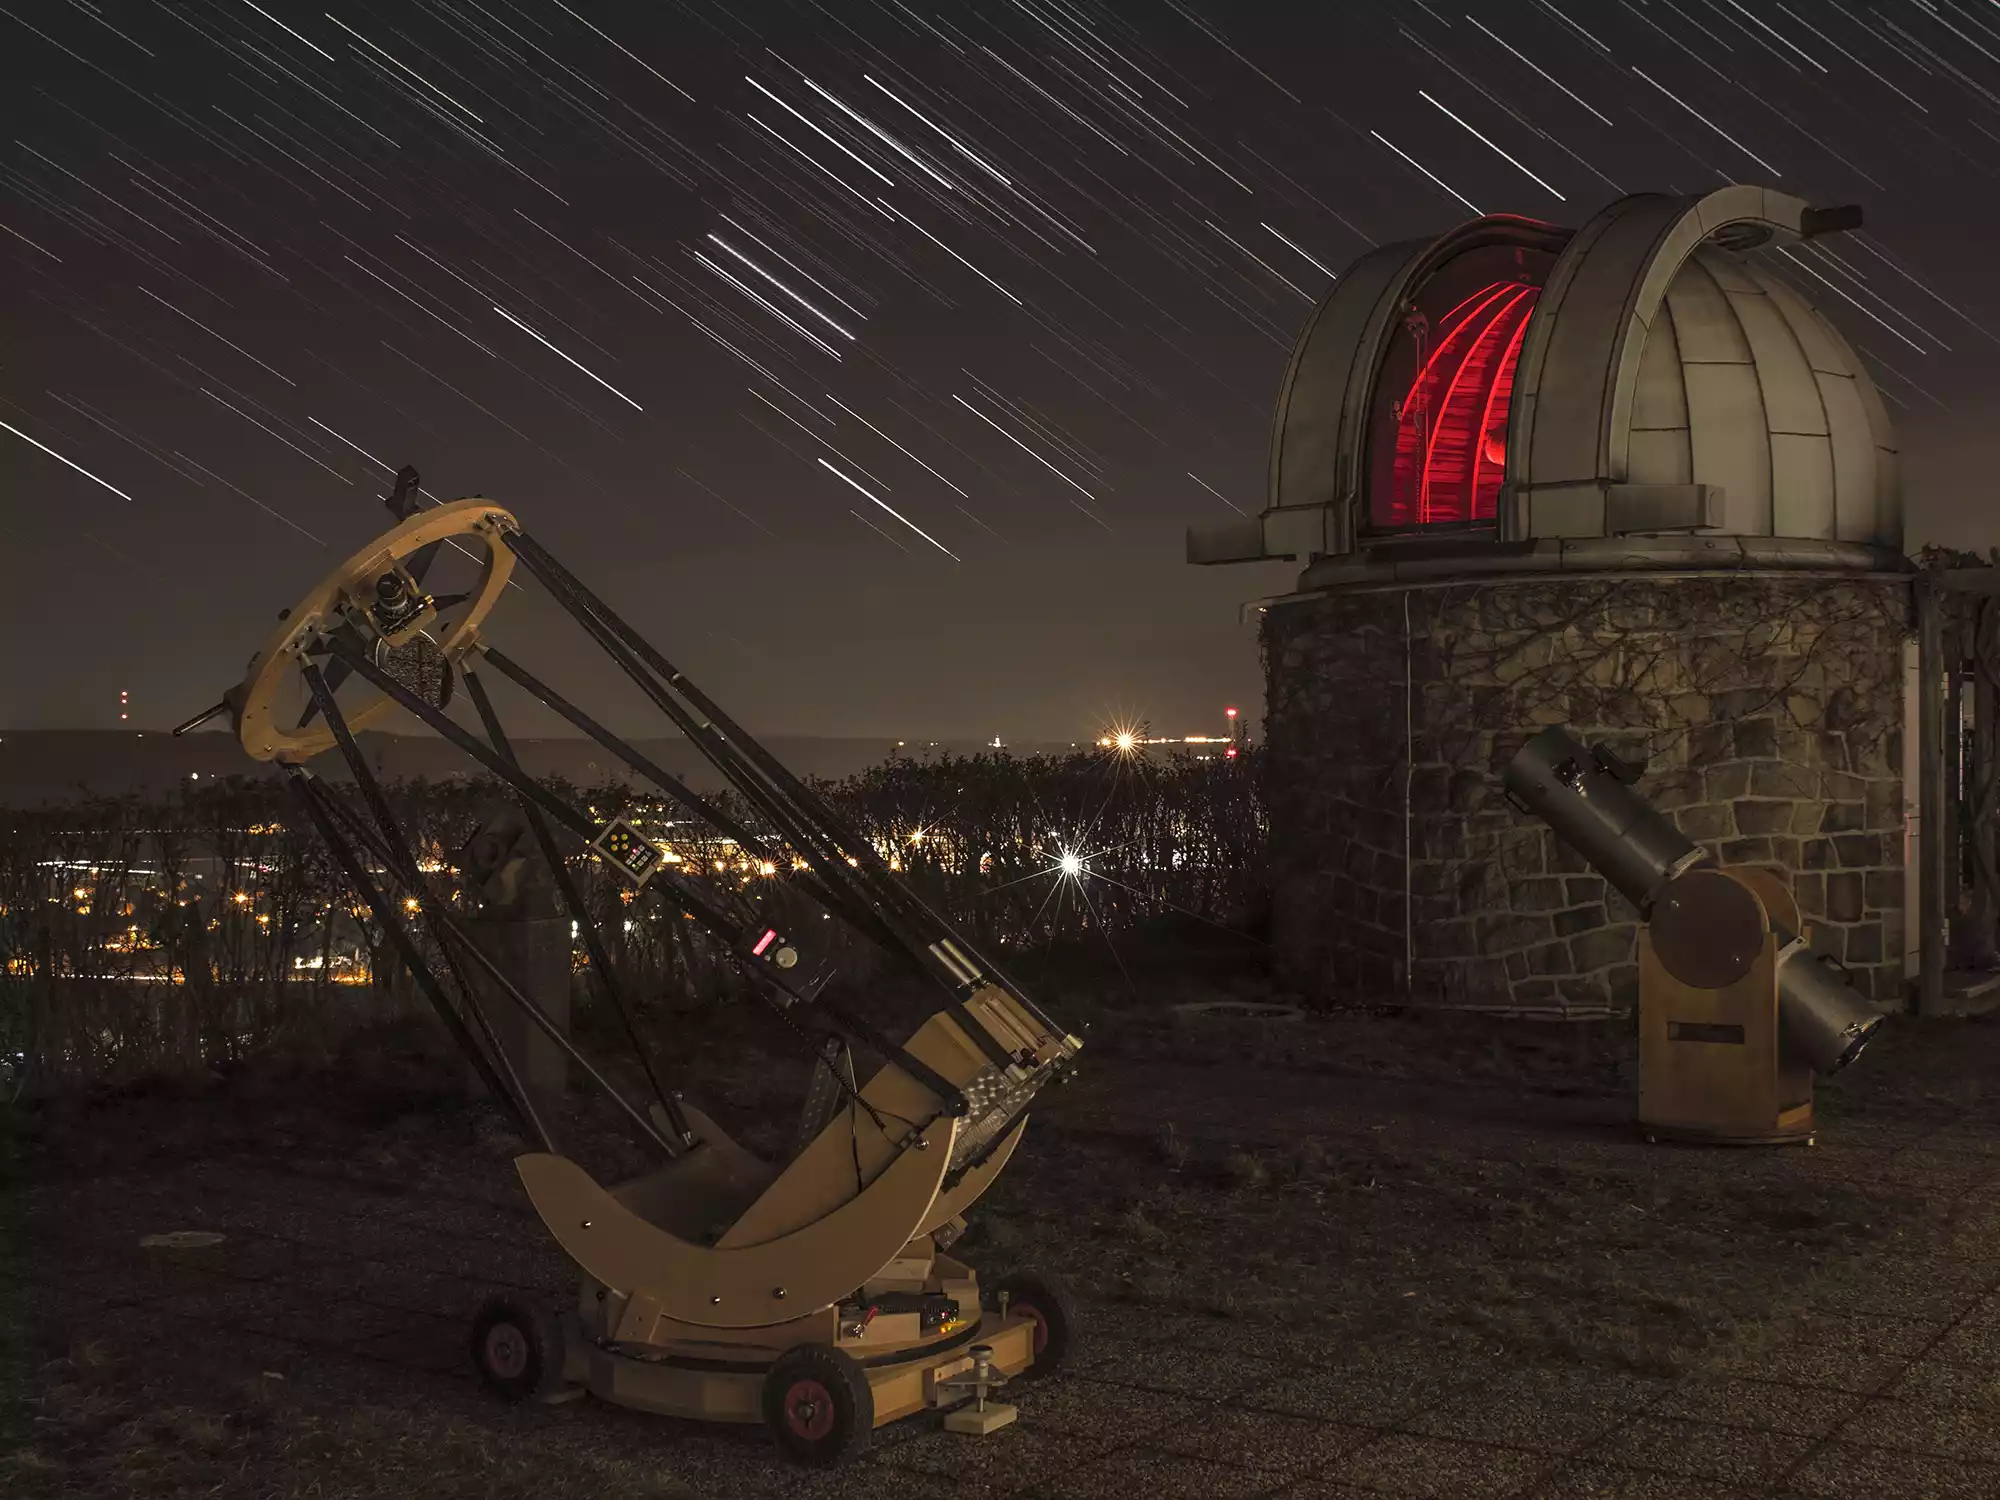 Grosses 24 Zoll Spiegelteleskop der Sternwarte Radebeul mit Sternspuren am Himmel durch Langzeitbelichtung des Fotos